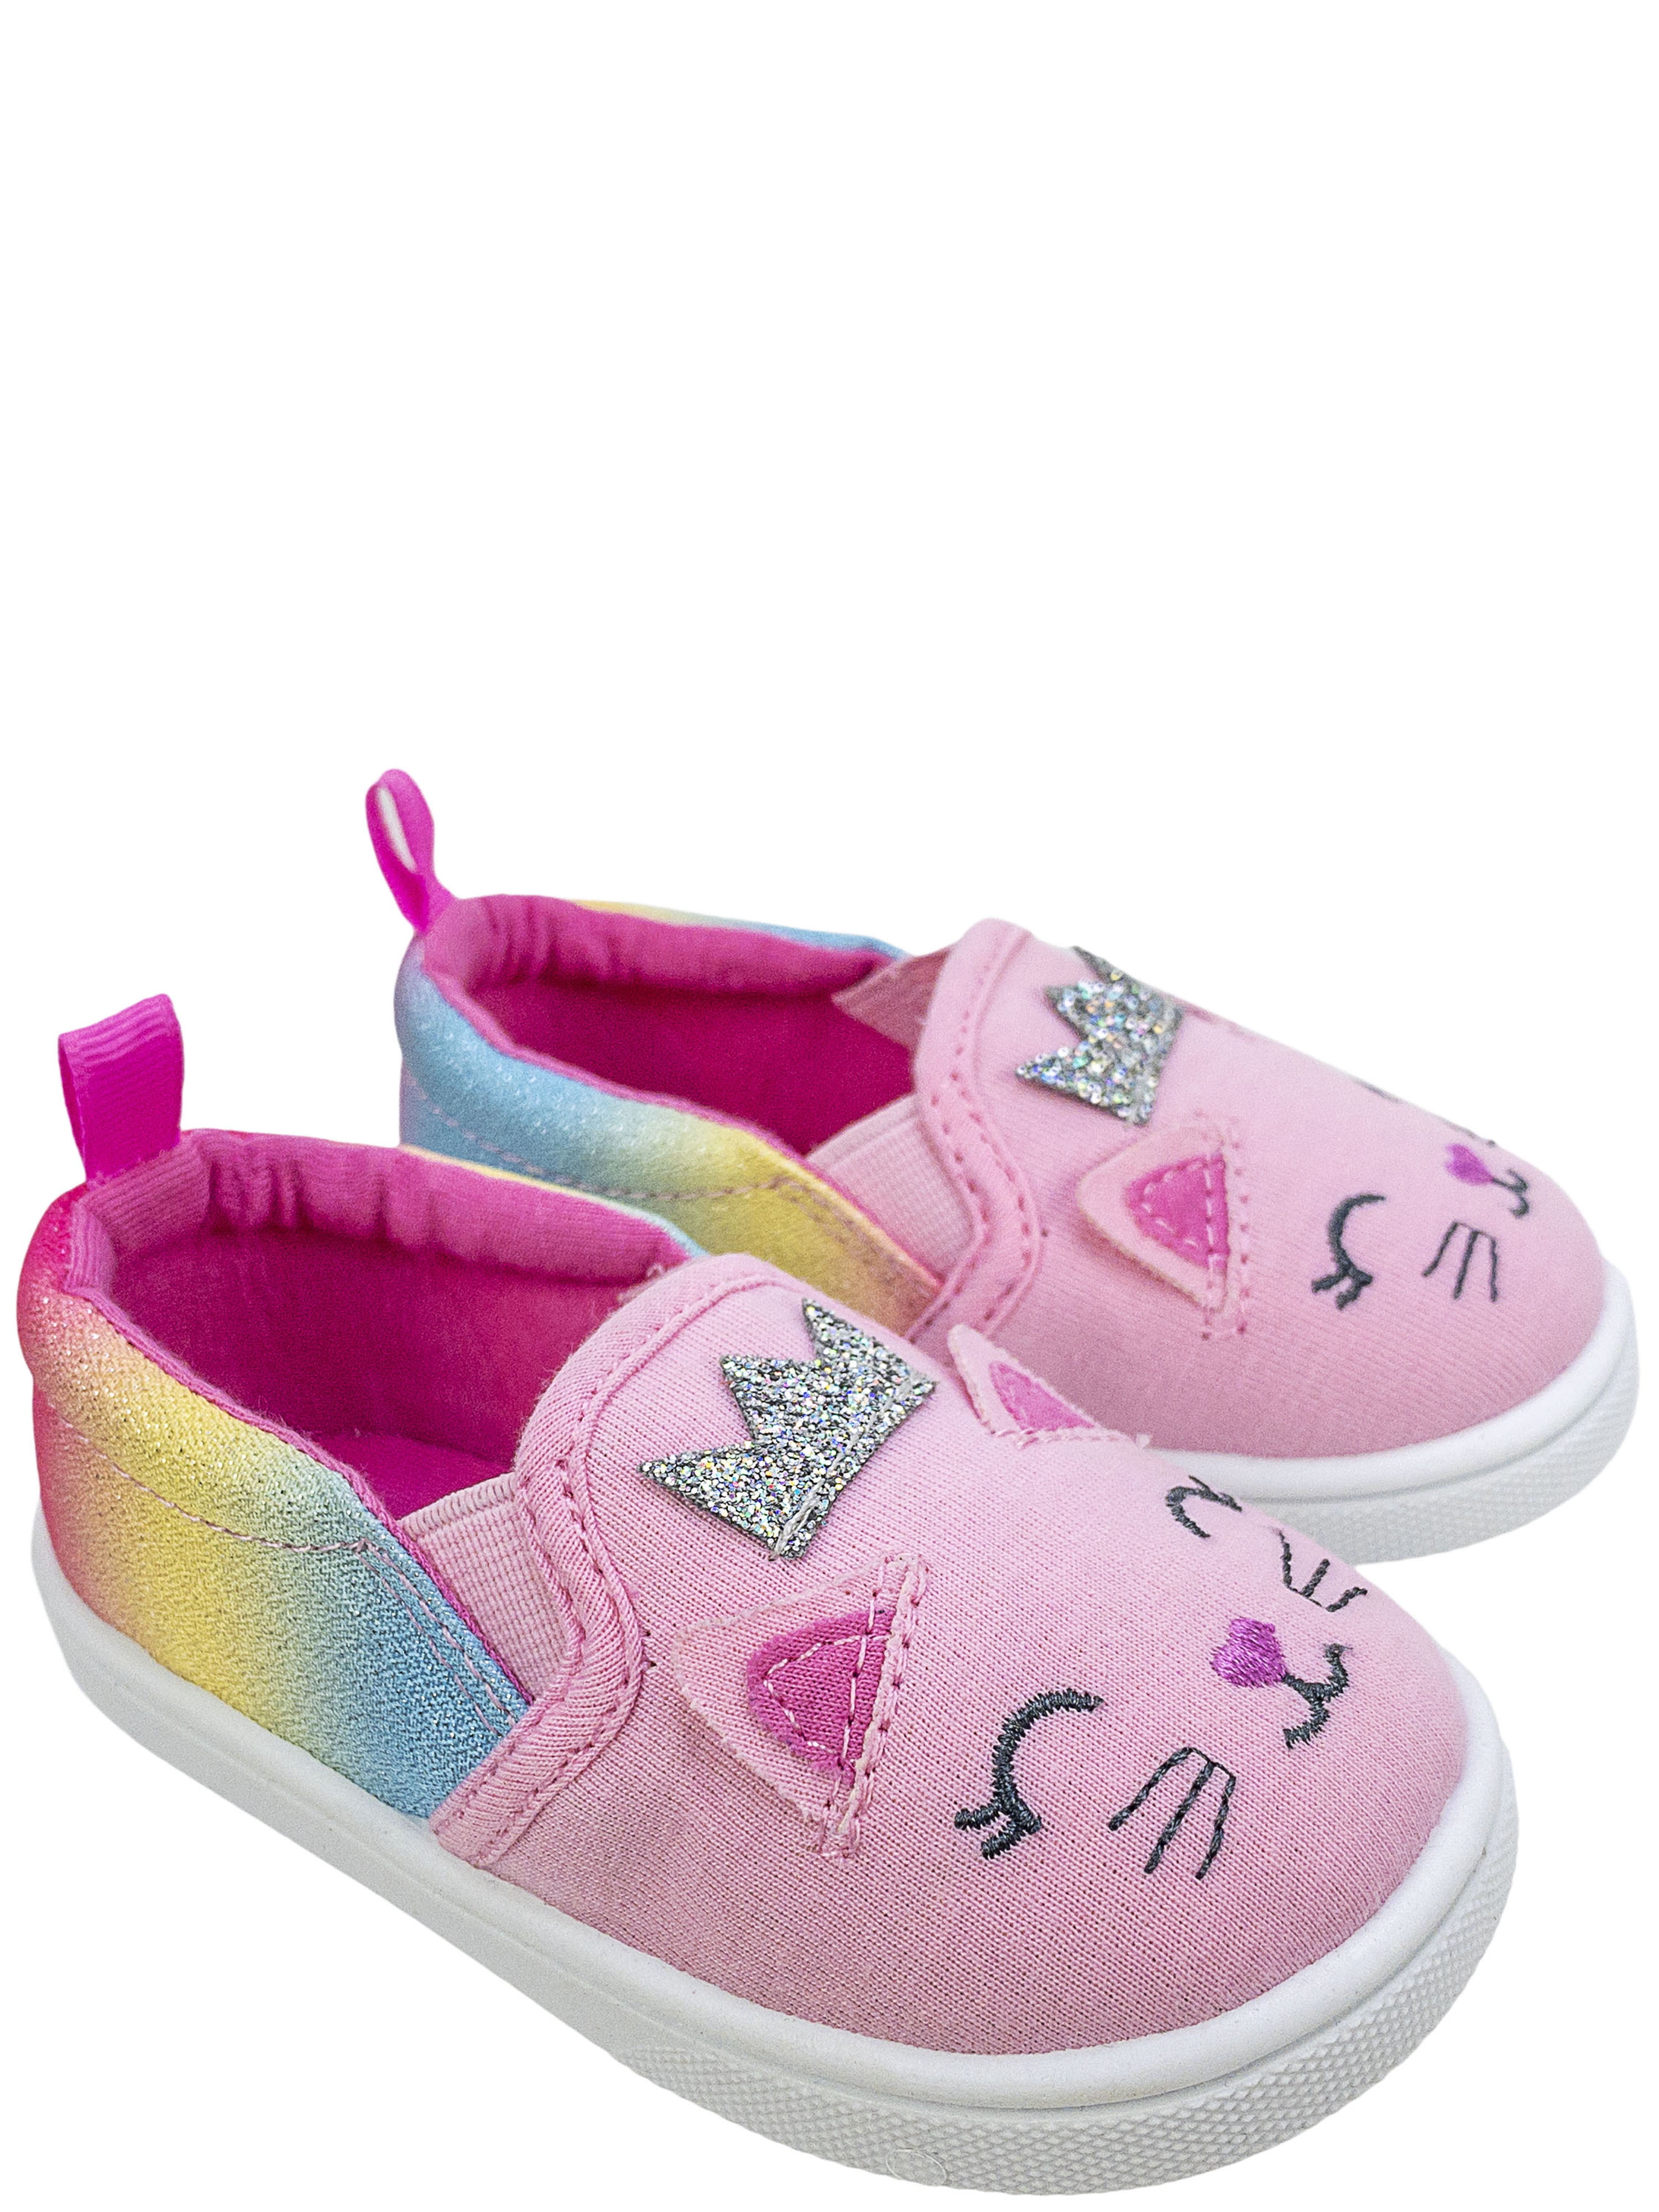 Wonder Nation Baby Toddler Boys' Critter Shark Fins Slip-on Sneaker Shoe 4 